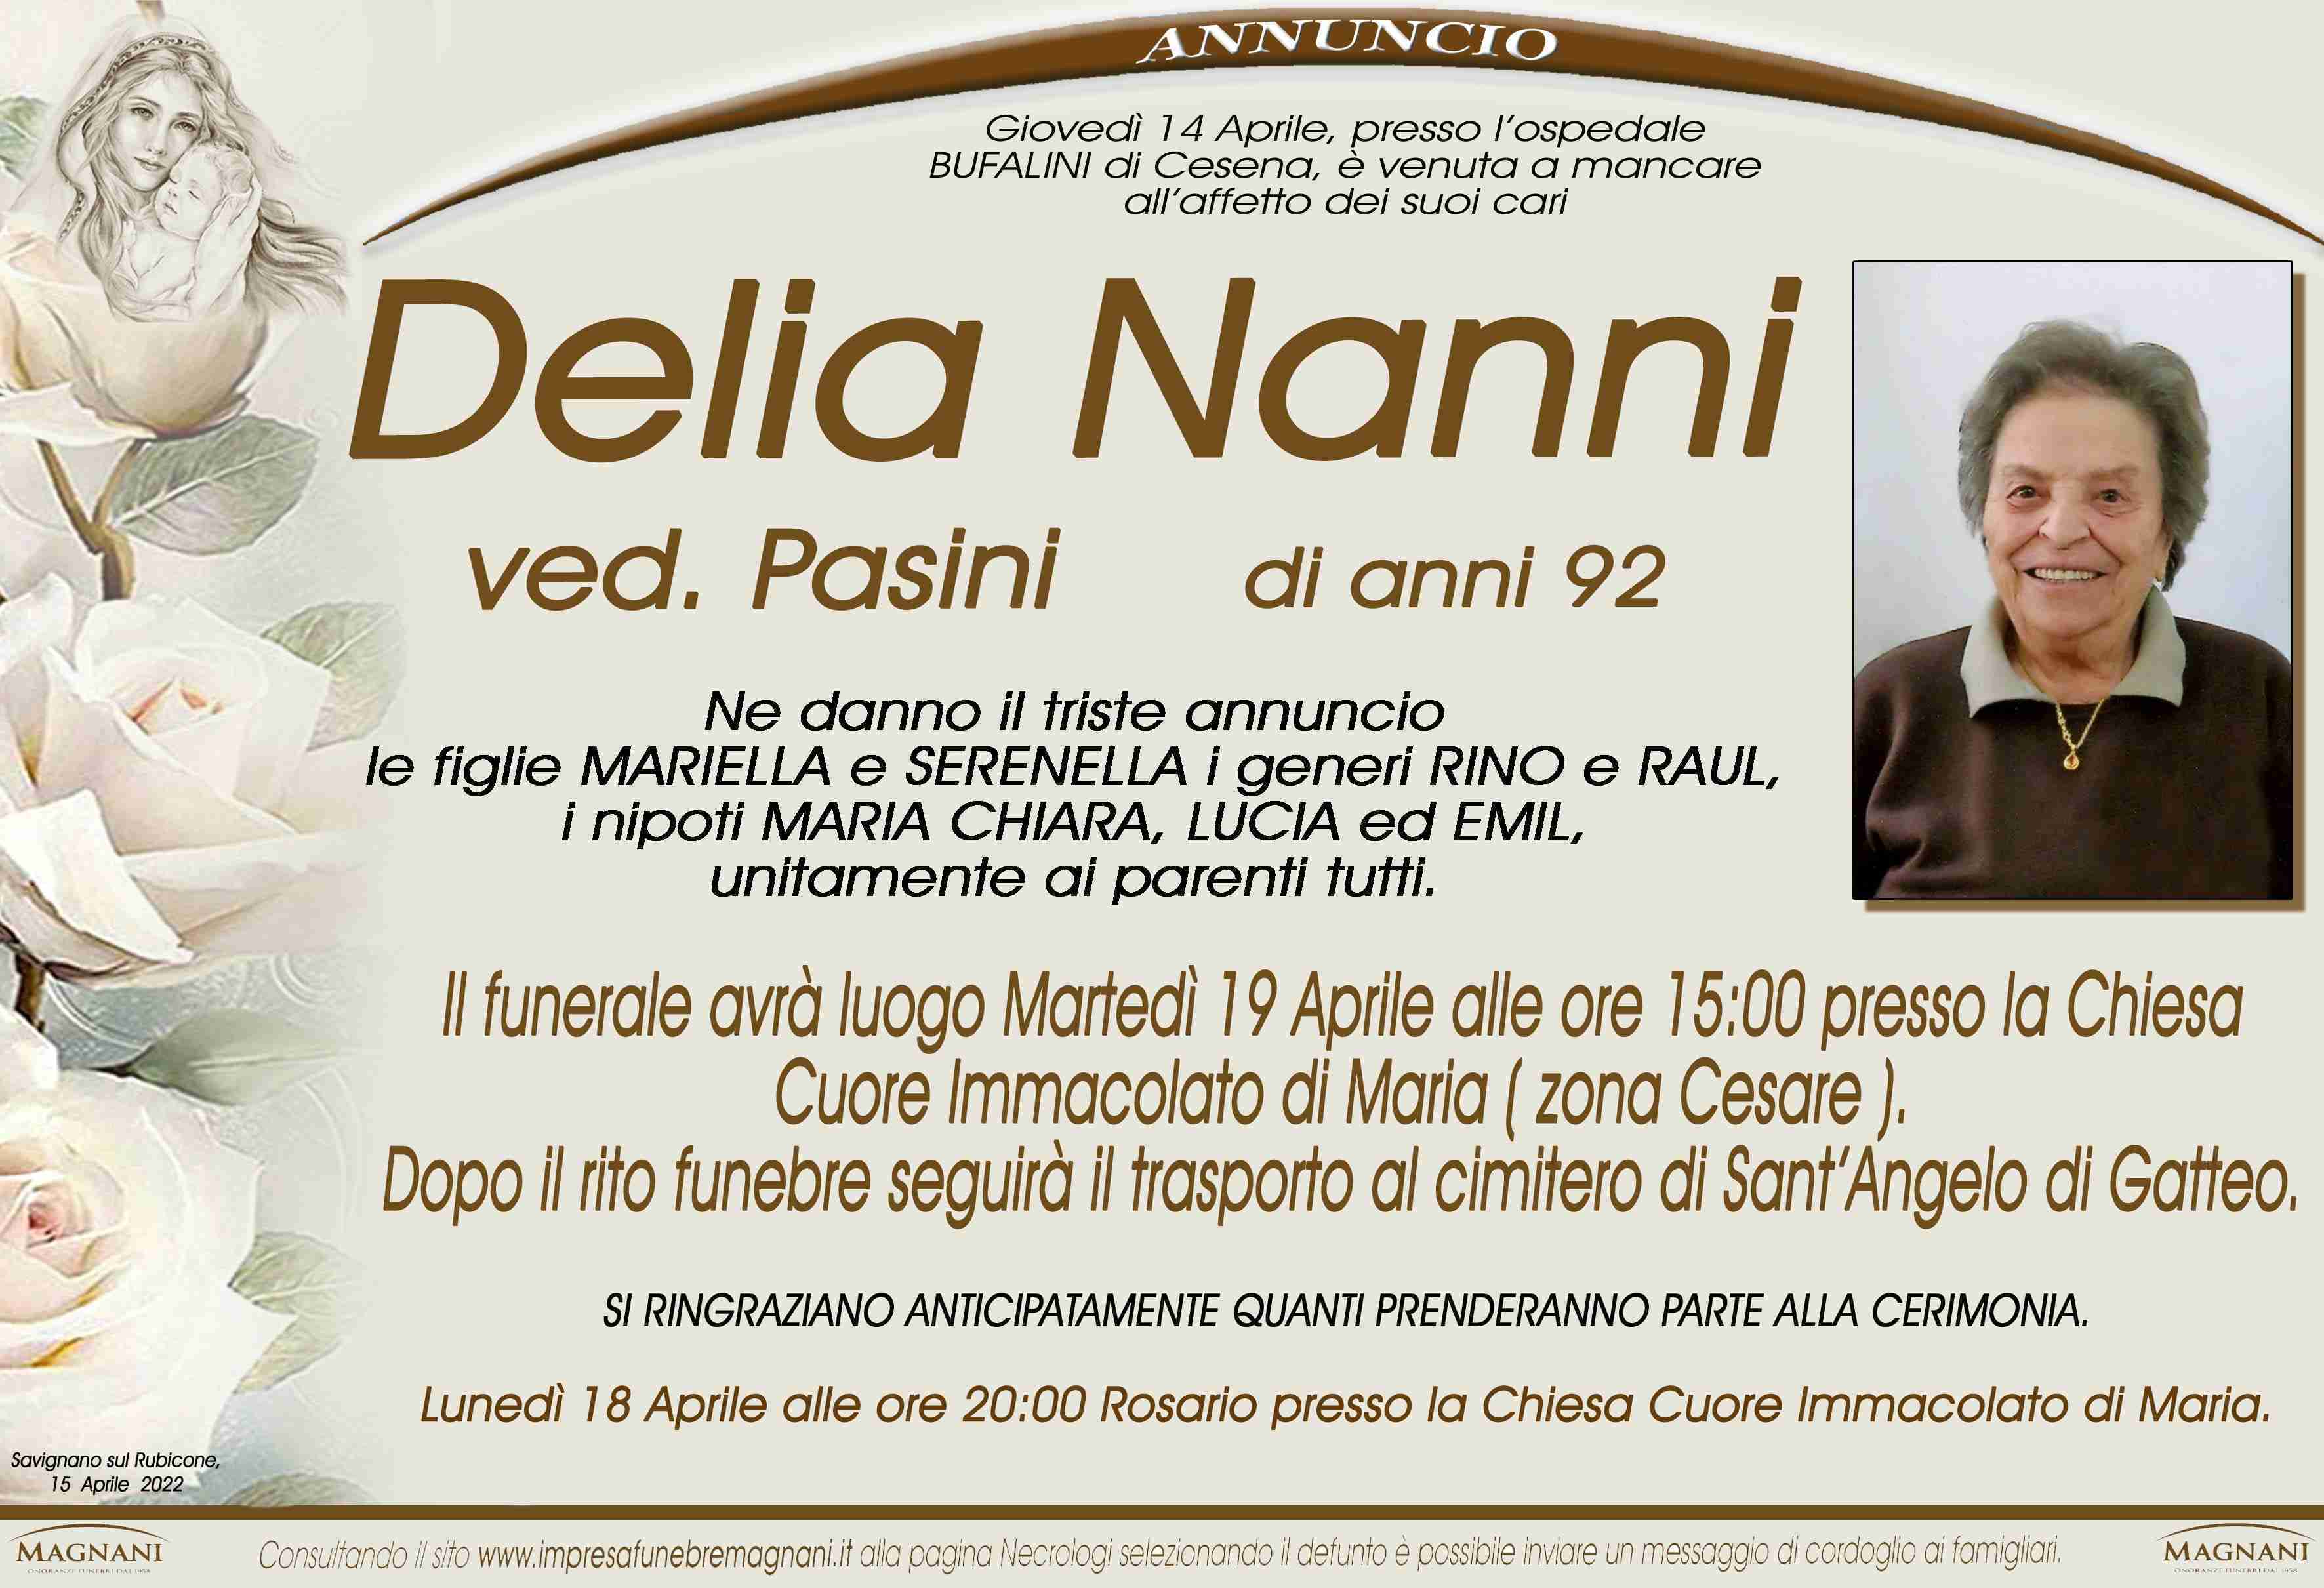 Delia Nanni